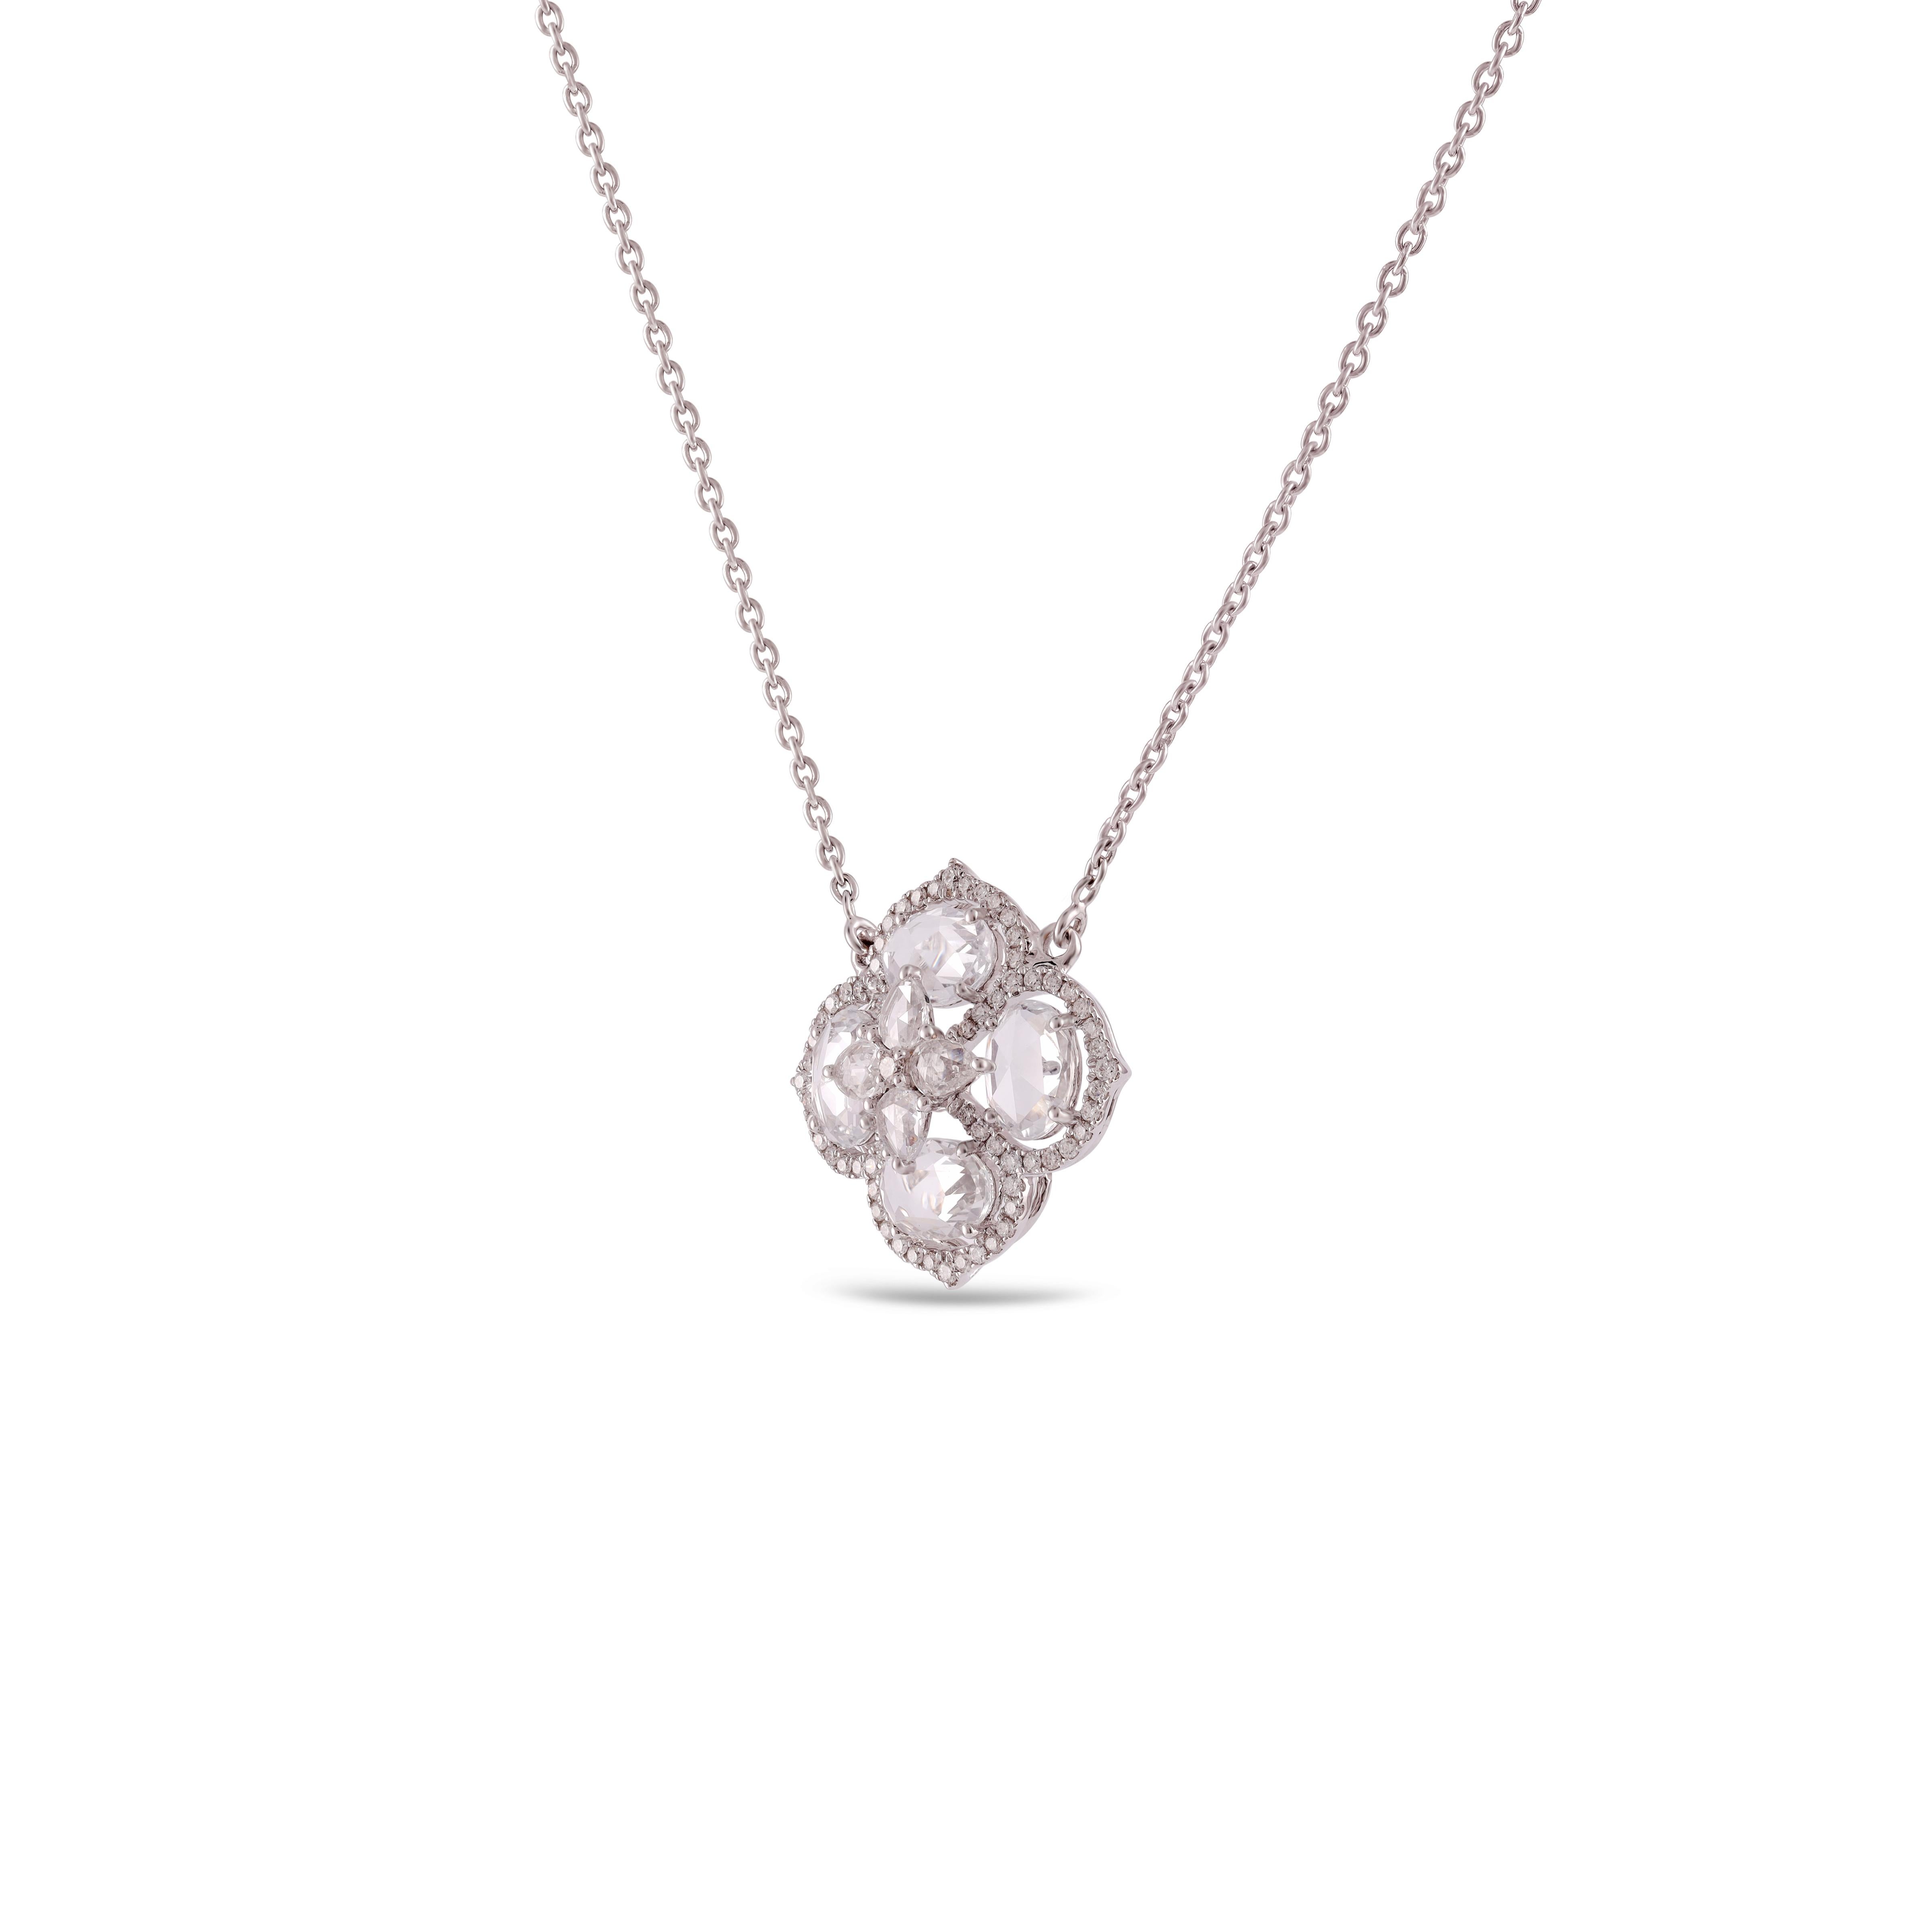 Or blanc 18 carats et diamant
Ce magnifique pendentif est composé d'un saphir de forme florale de couleur blanche 3,04 et d'un diamant de 0,62 carats.
Or blanc 6,18 grammes.
